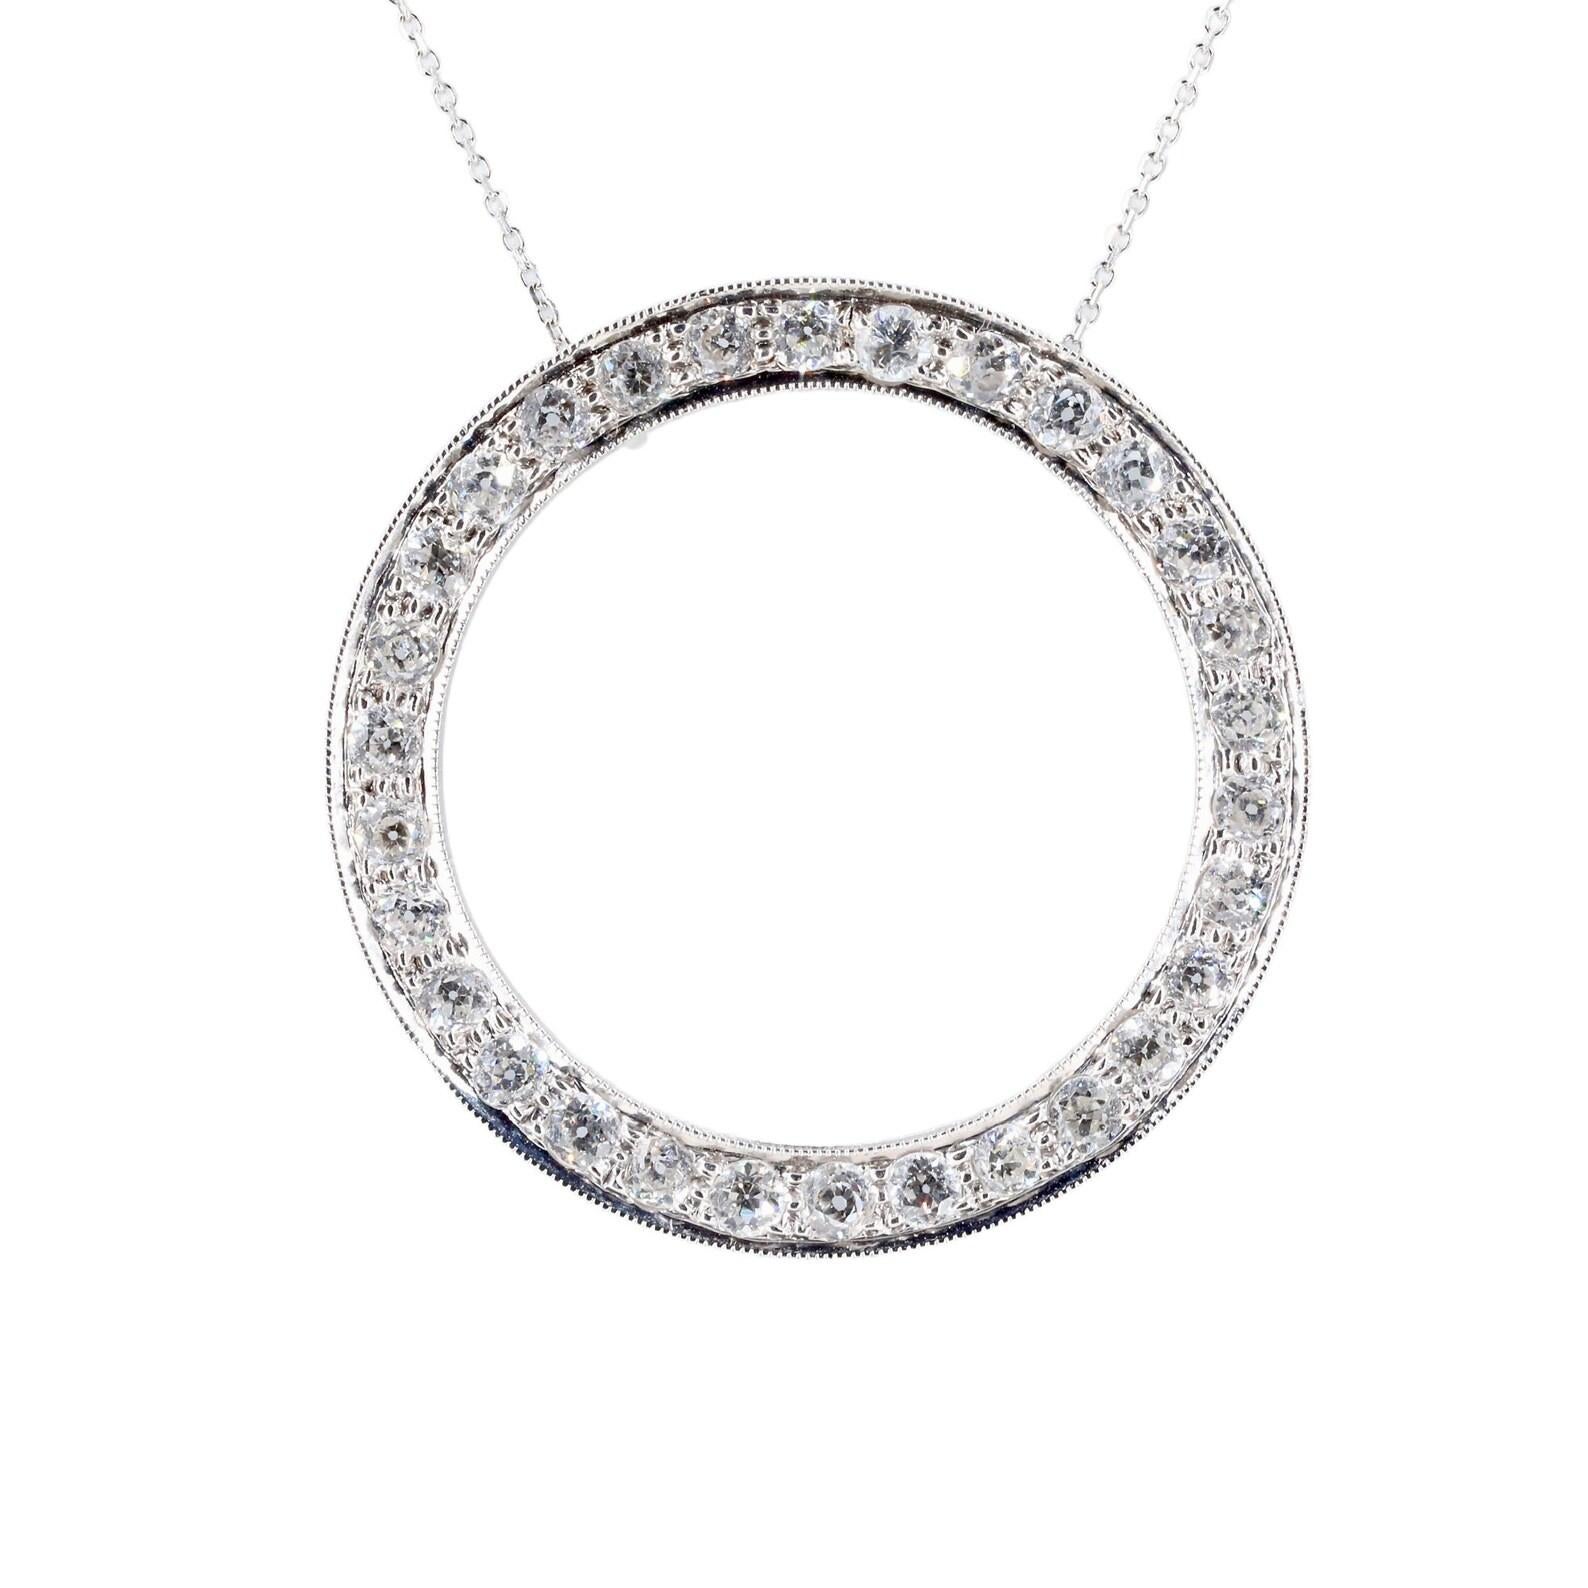 Pendentif circulaire en diamant en platine de Tiffany & Company, d'époque Art Déco. Serti de 30 diamants de taille européenne ancienne pesant un total de 3,00 carats. Les diamants sont de couleur G/H et de pureté VS.

Signé Tiffany, et testé comme